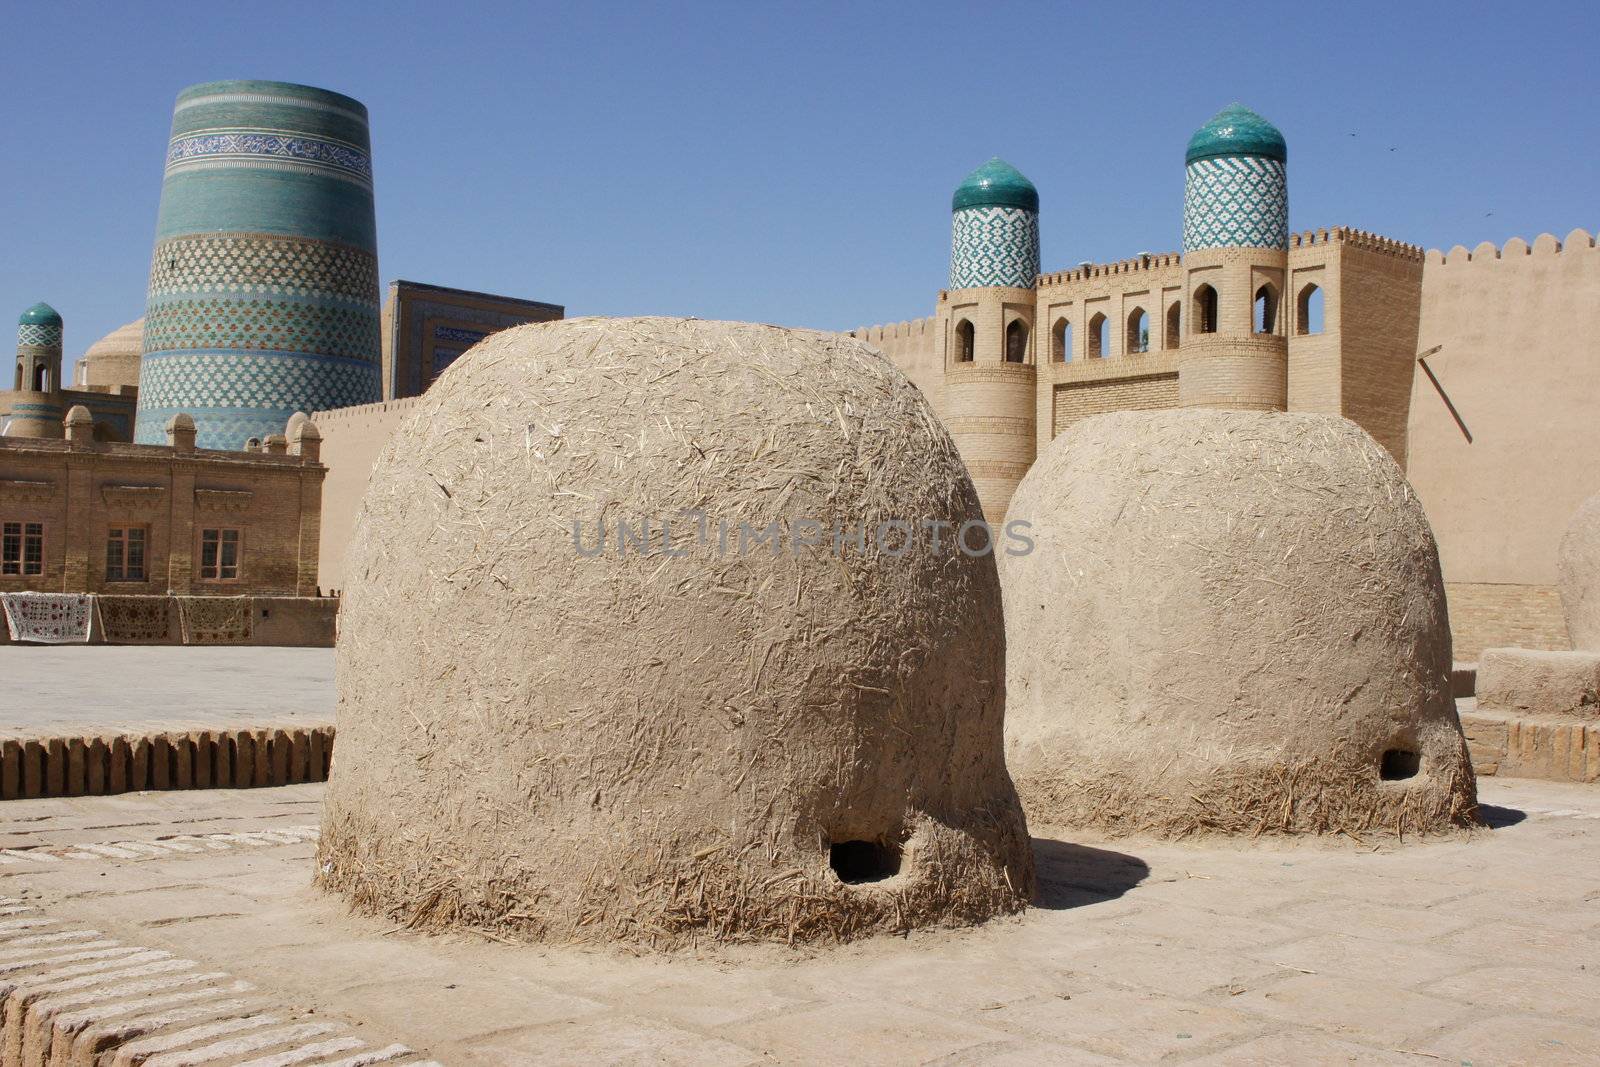 Traditional clay stoves, ancient city of Khiva, Uzbekistan